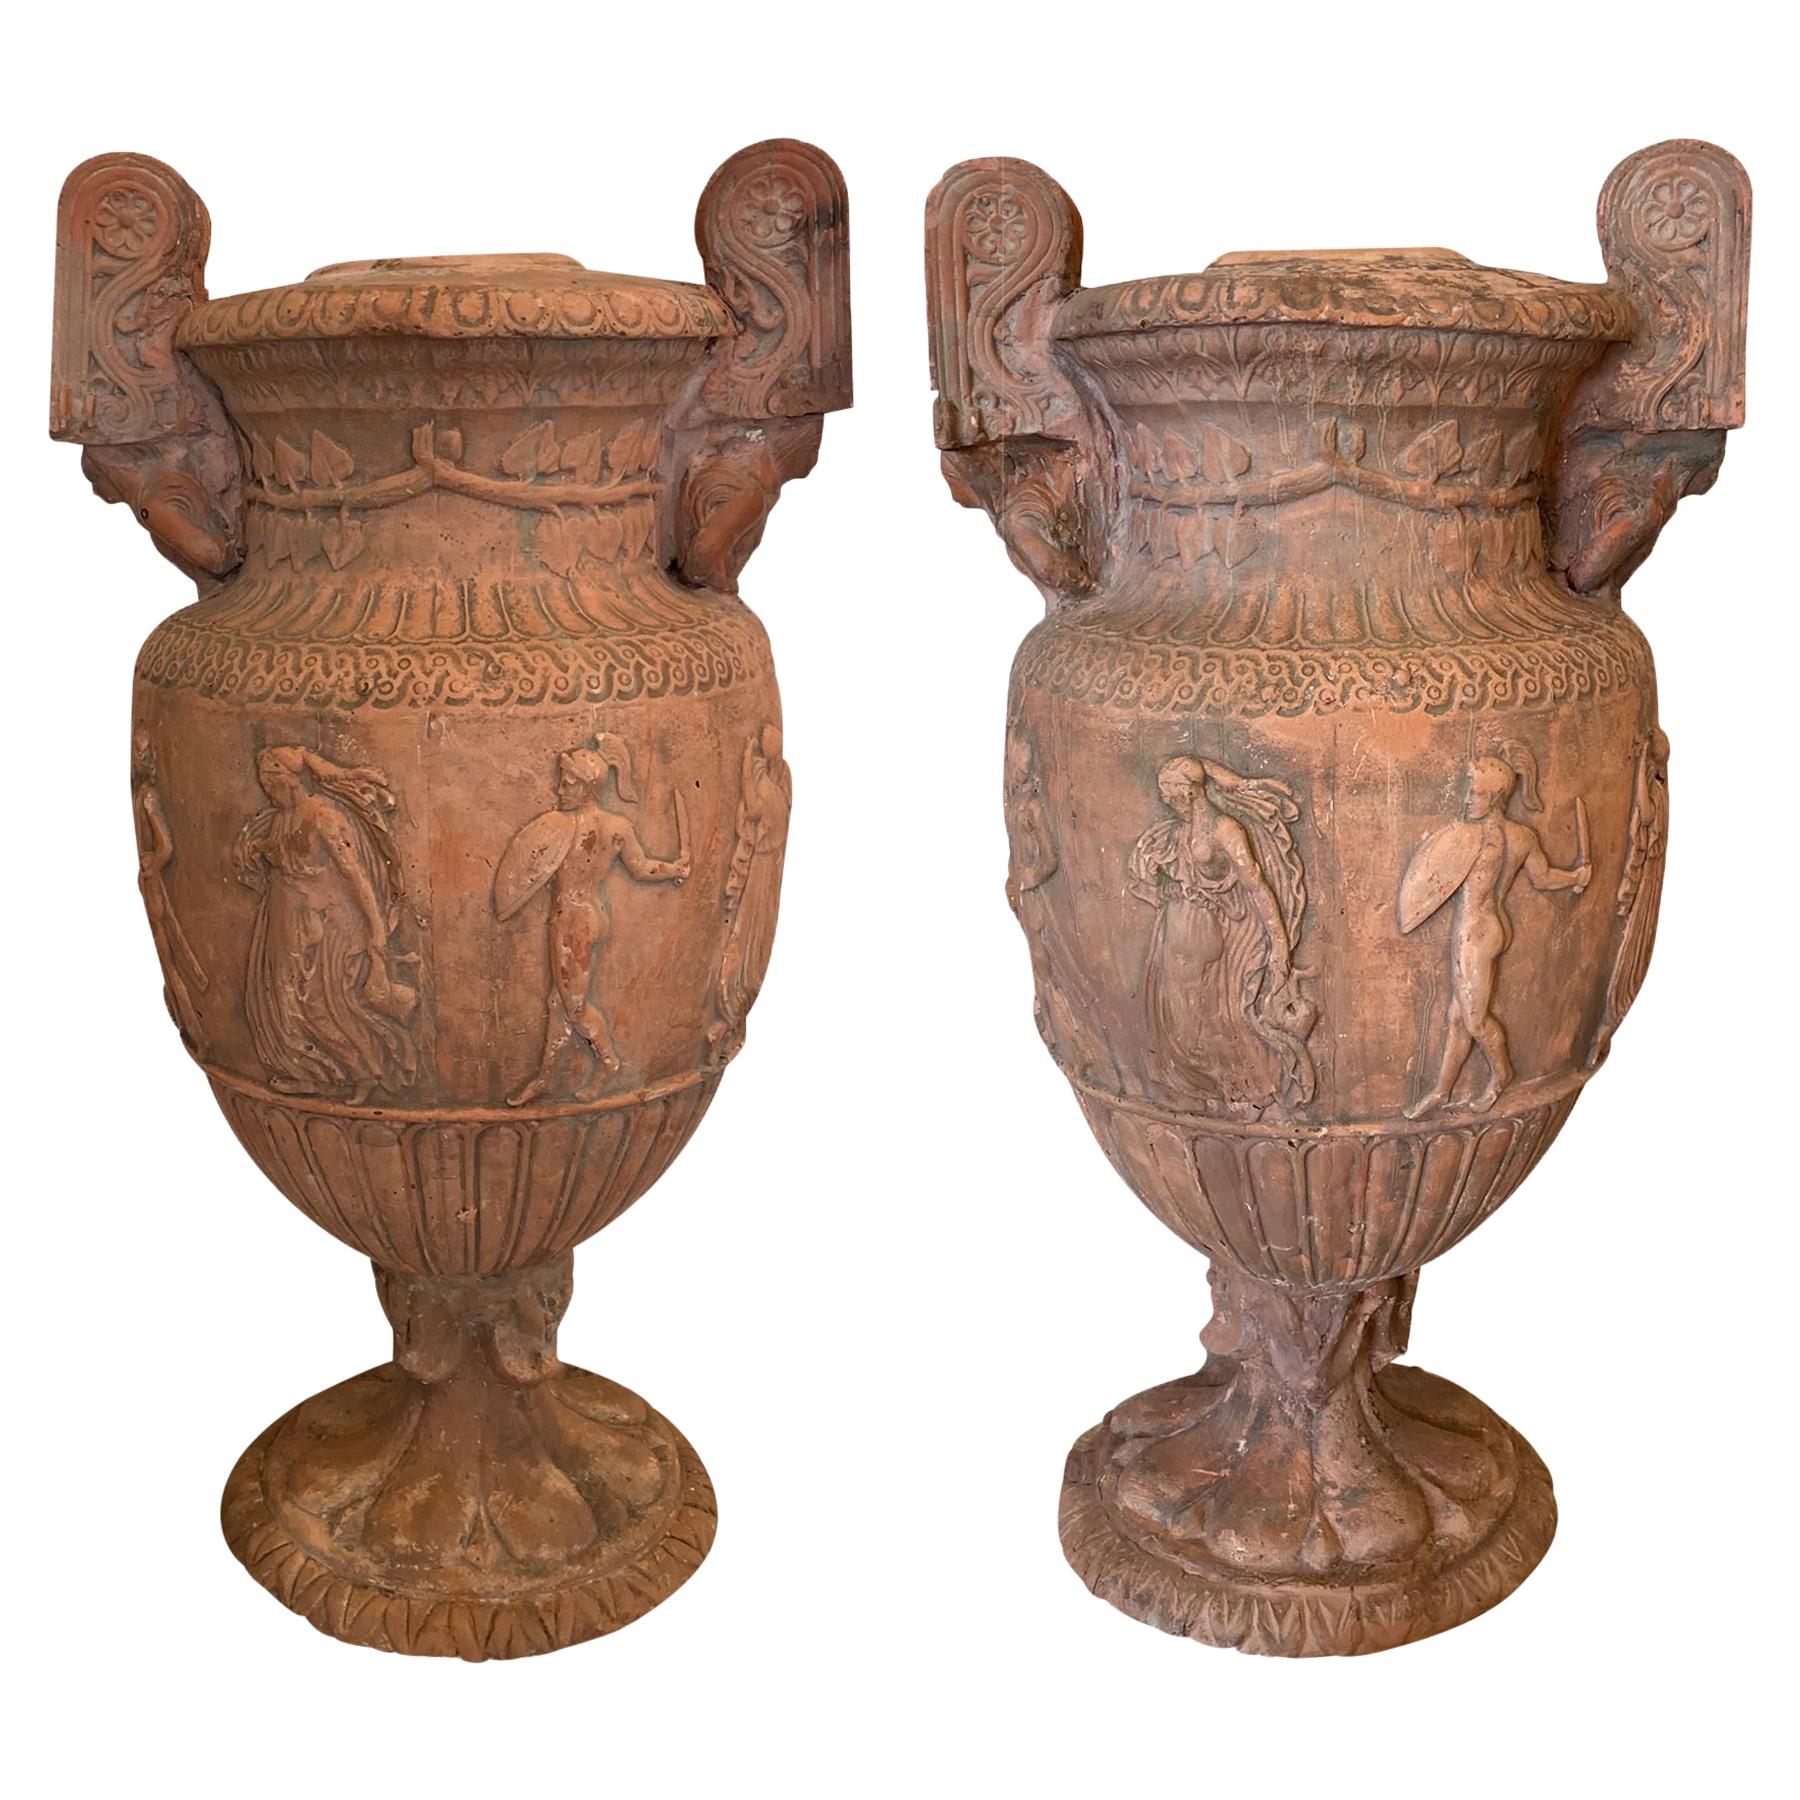  Pair Terra cotta Classical Urns